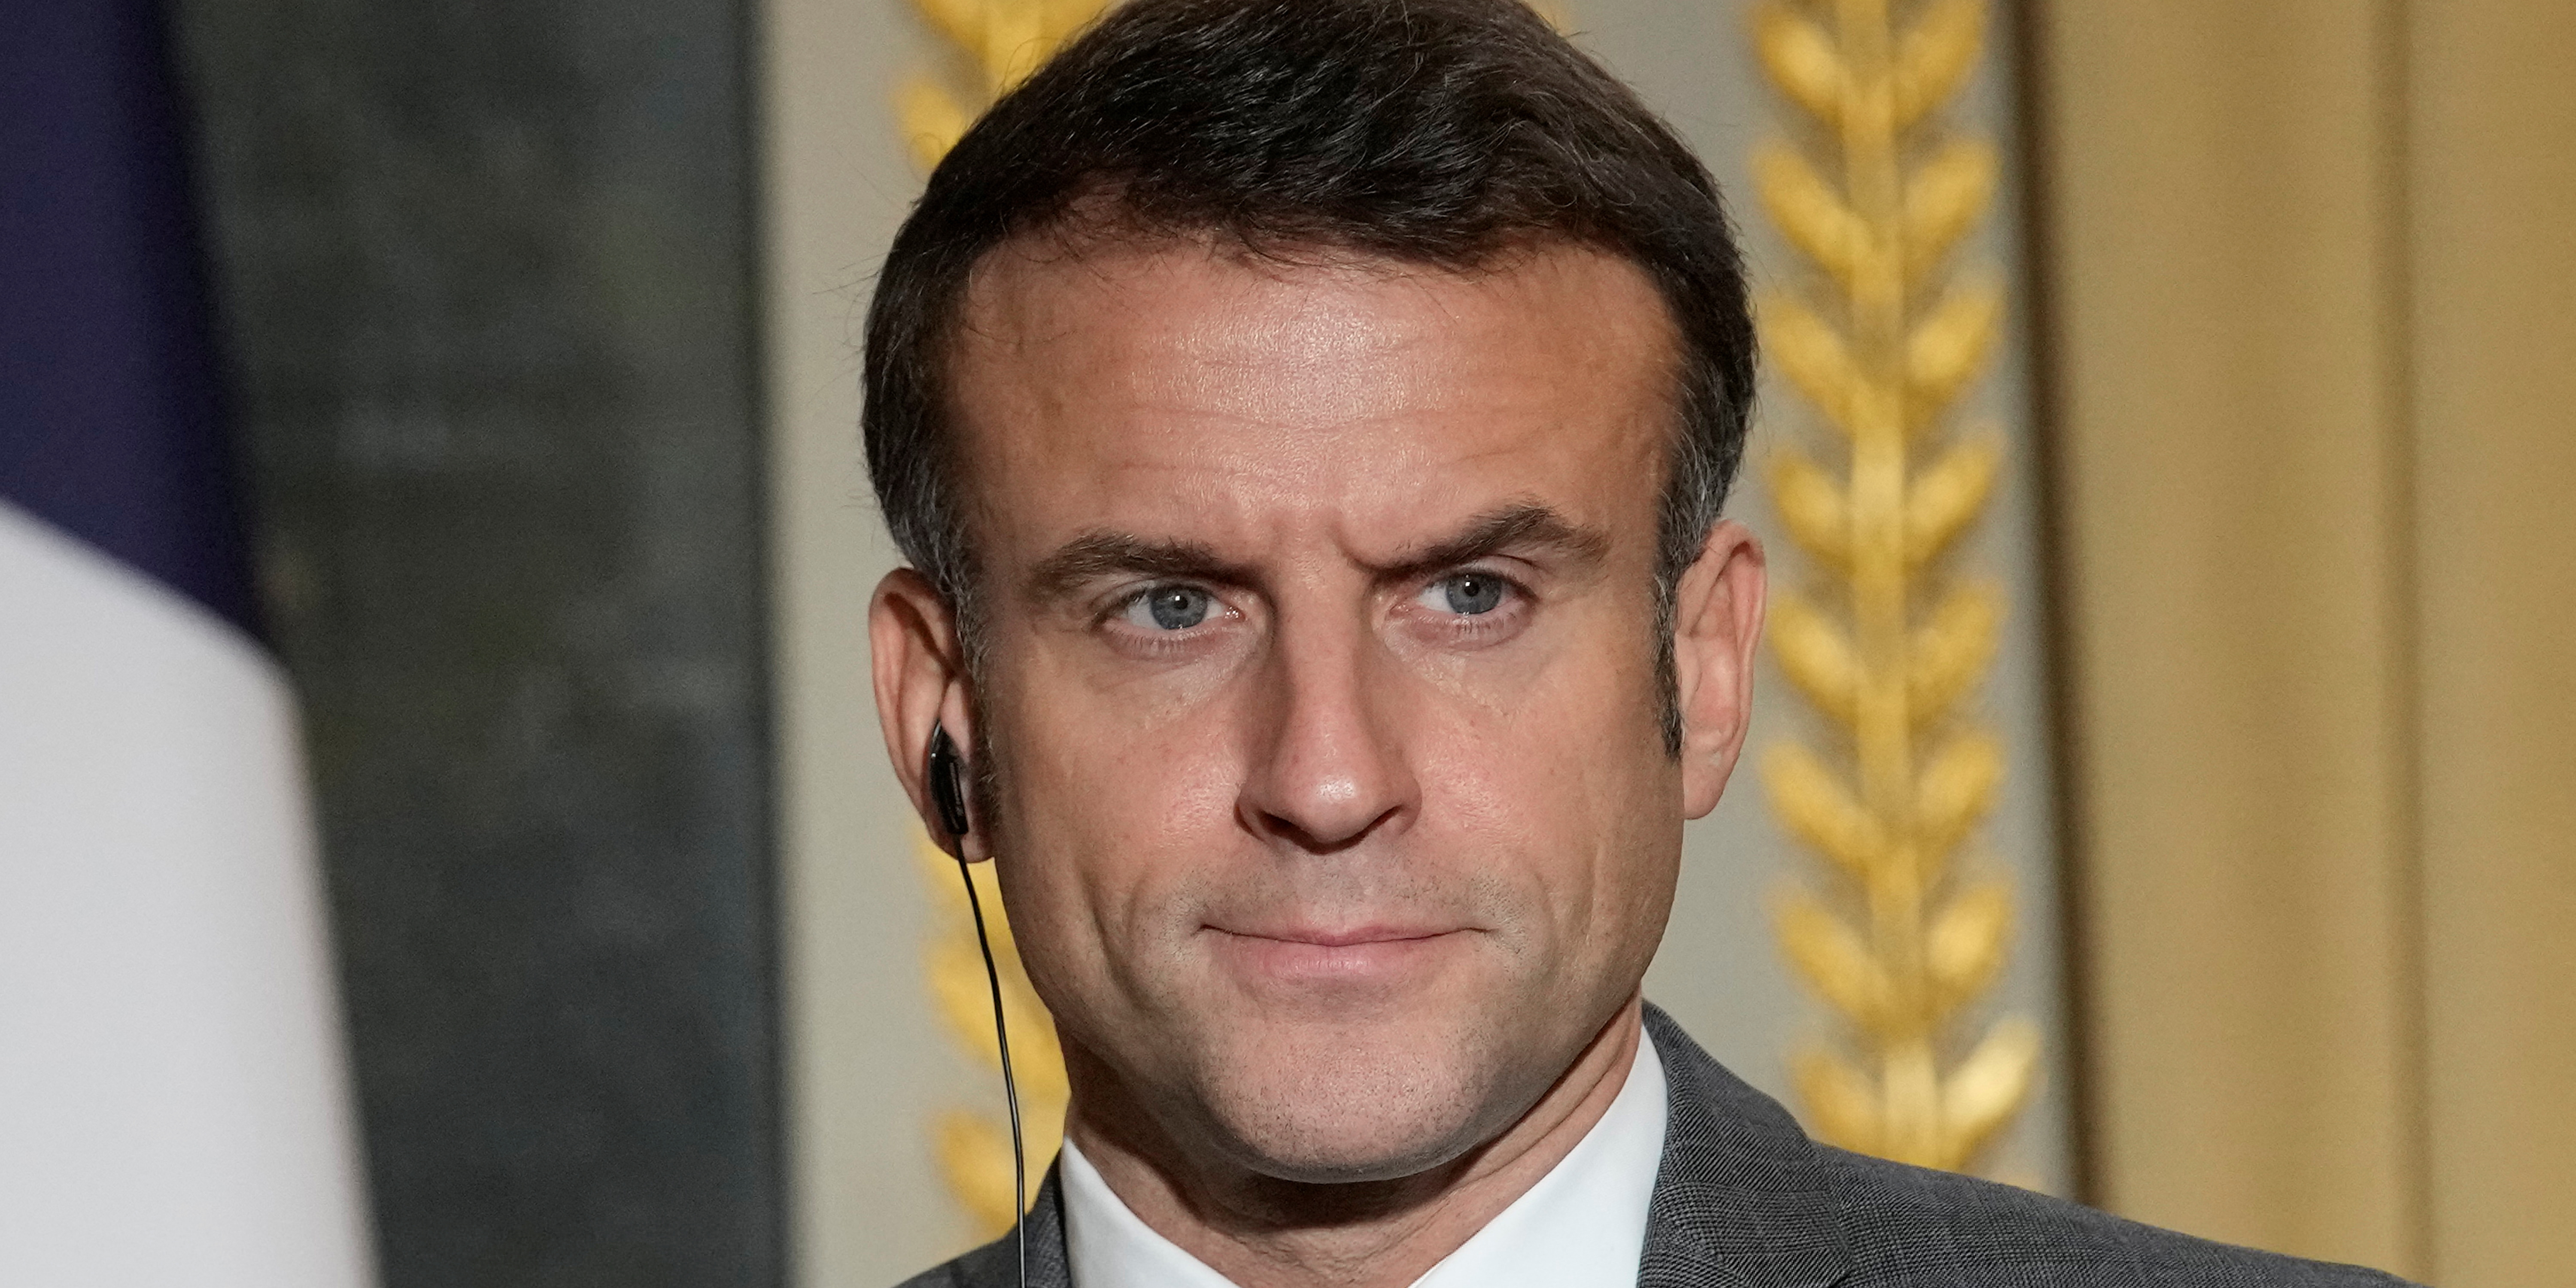 France 5 : record « historique » avec 3 millions de téléspectateurs devant l'interview d'Emmanuel Macron